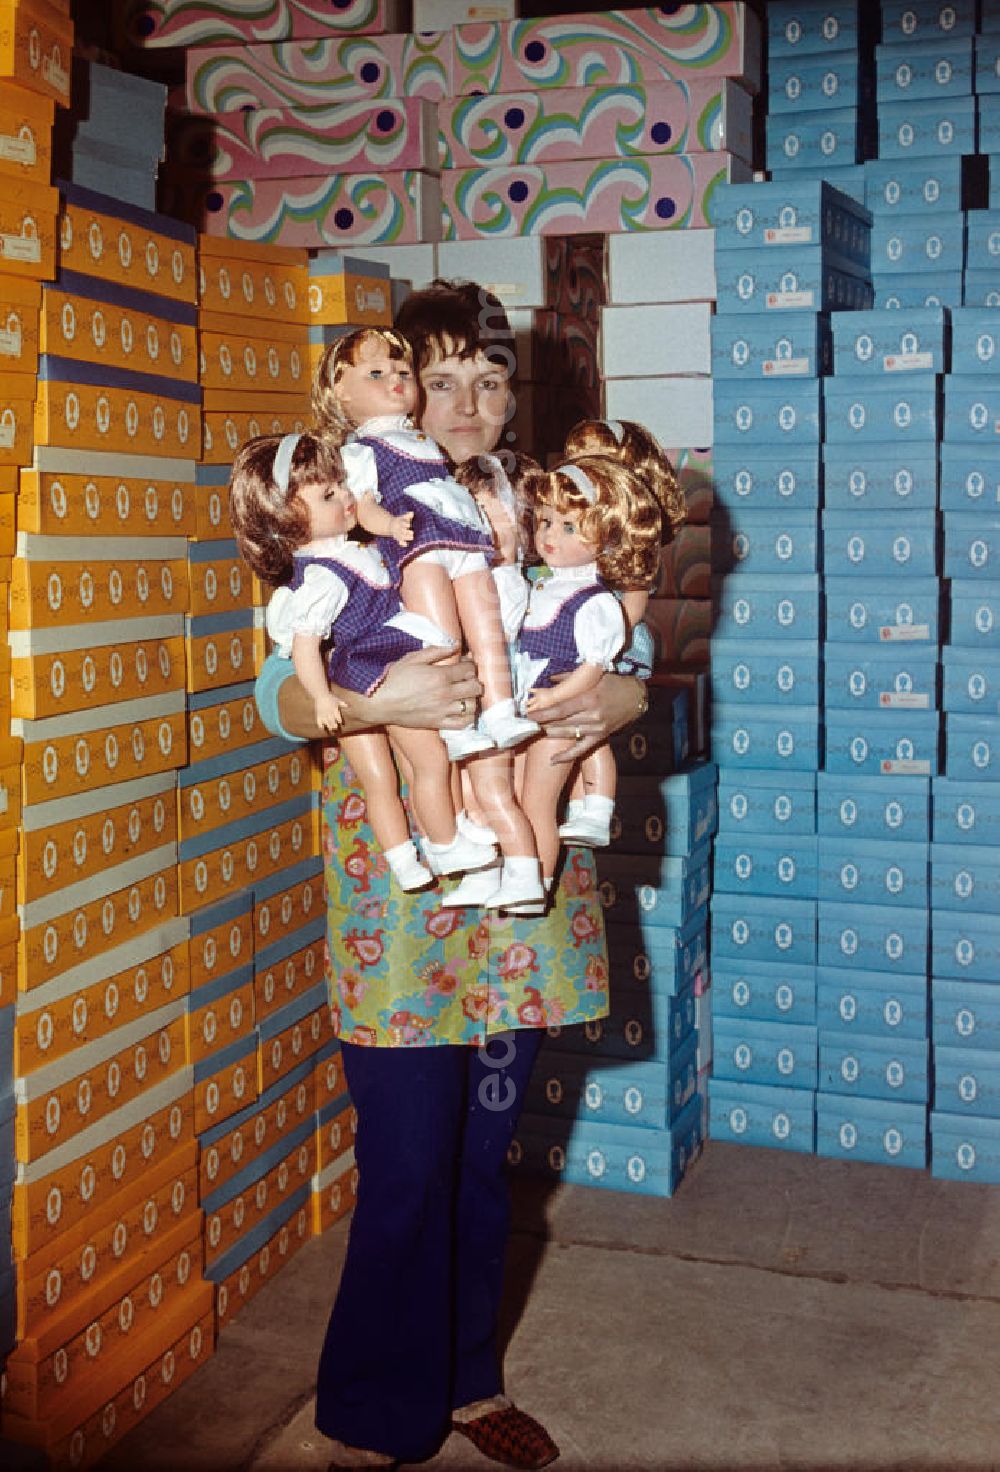 GDR image archive: Sonneberg - Eine Mitarbeiterin des VEB Kombinat Spielwaren Sonneberg sonni präsentiert fertige Puppen auf ihrem Arm, im Hintergrund stapeln sich die Verkaufskartons. Die Sonneberger Puppen waren nicht nur in der DDR beliebt, sondern trugen den Namen der Stadt in alle Welt.